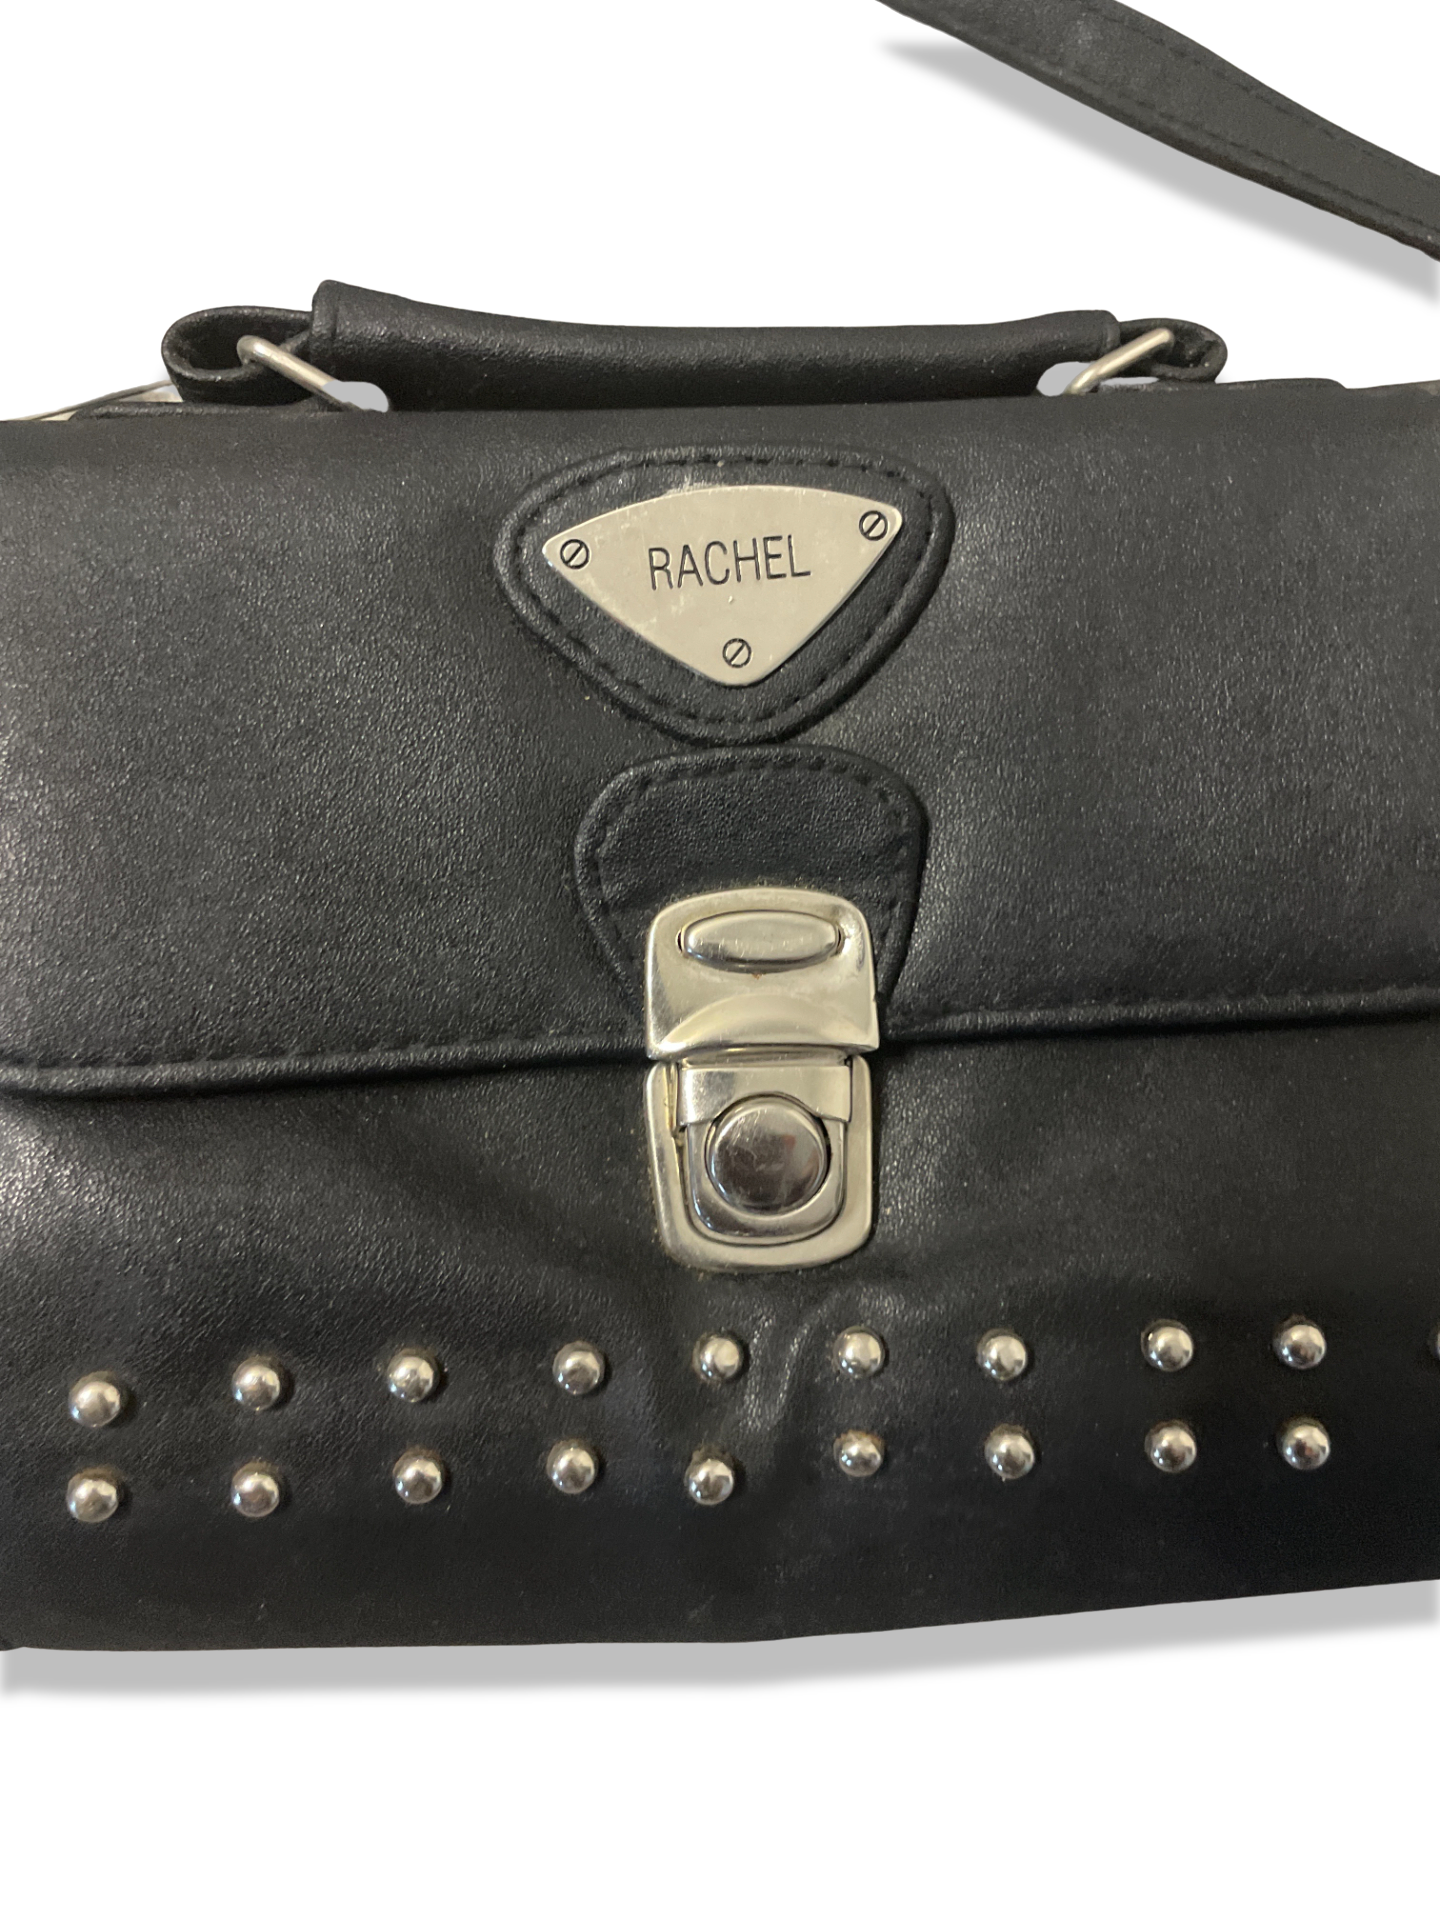 Rachels Closet Vintage y2k Rachel black leather bag